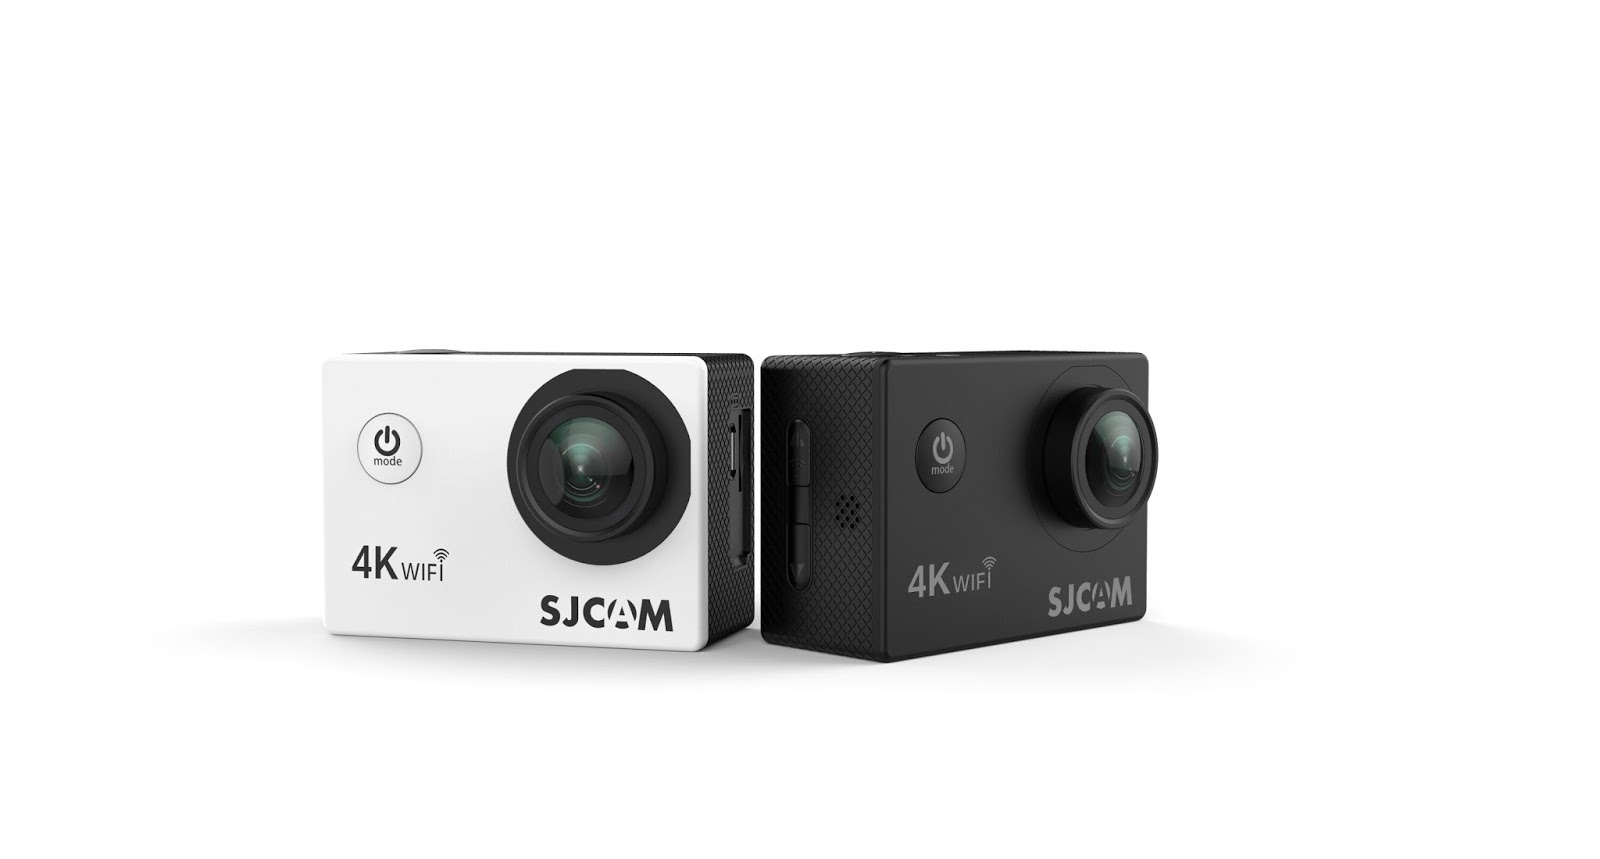 ภาพประกอบคำอธิบาย SJCAM SJ4000air Action camera 4K กล้องติดหมวก กล้องกันน้ำ ฟรีแบตสำรองเเละแท่นชาร์ท ของแท้ (สีดำ,เงิน)